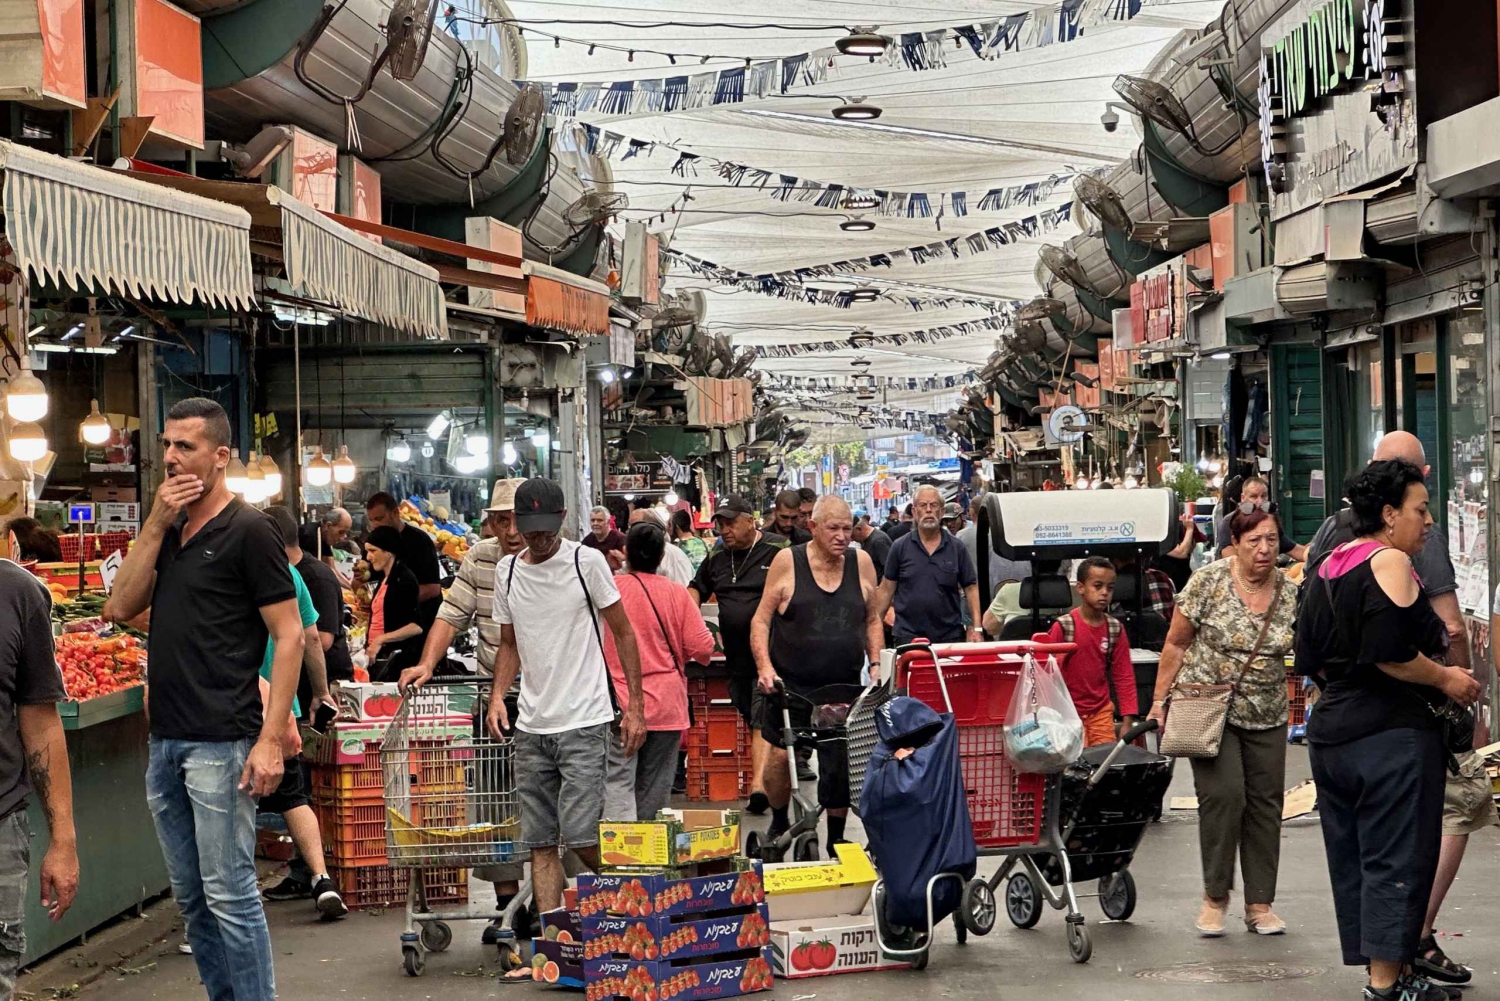 Tel Aviv: Tour guiado pelo mercado iraquiano judeu Tikva